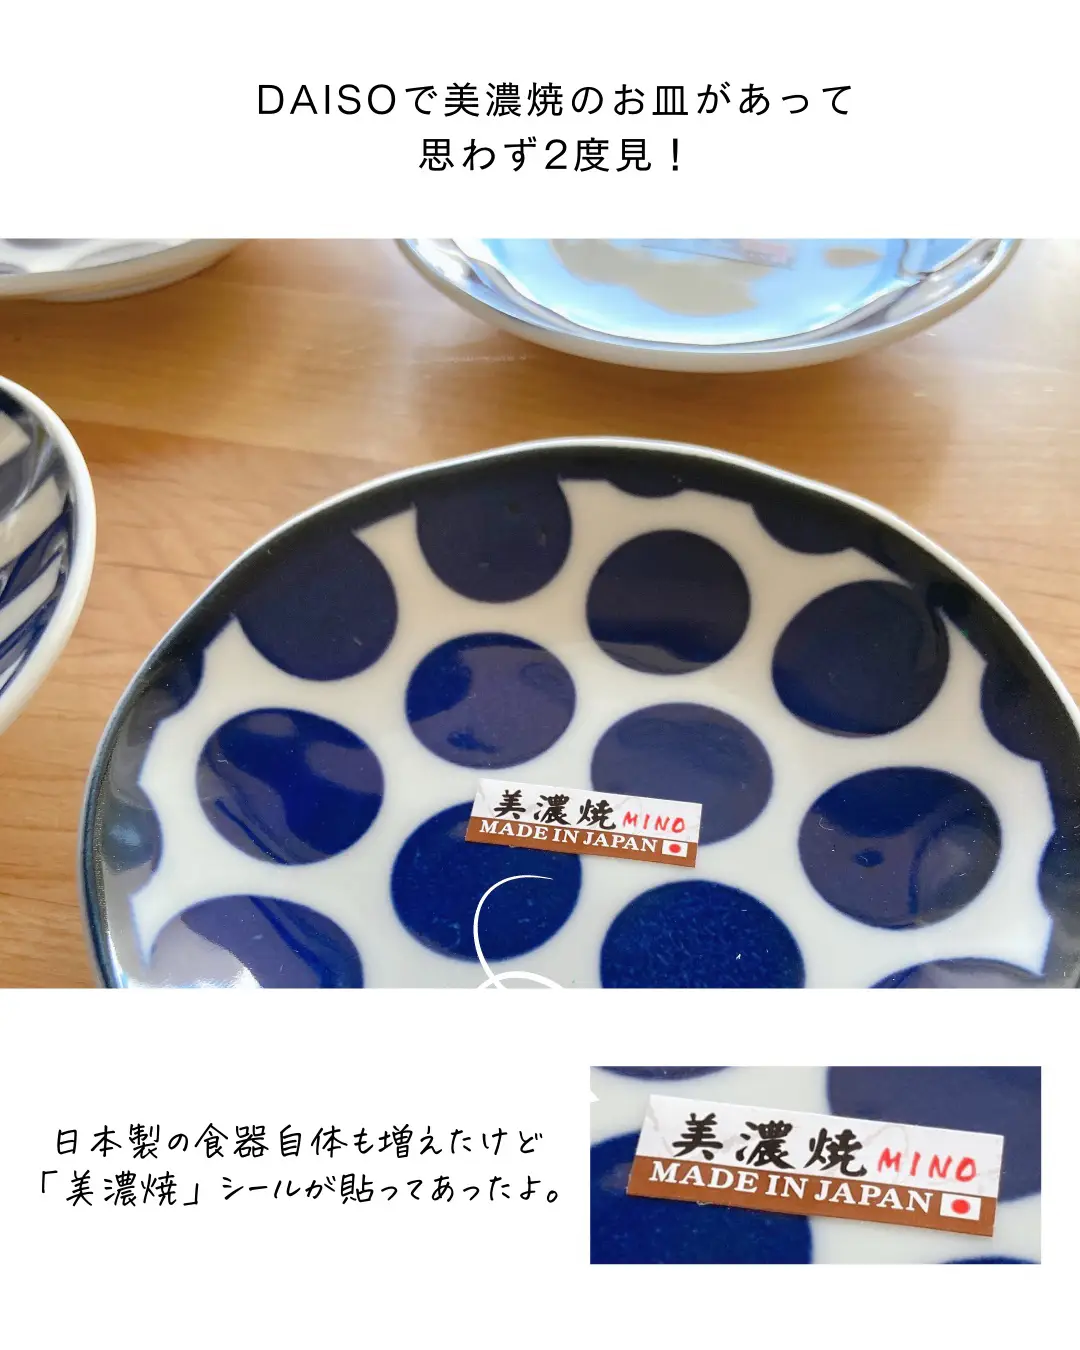 【DAISO】美濃焼のお皿が買えた🤍の画像 (2枚目)